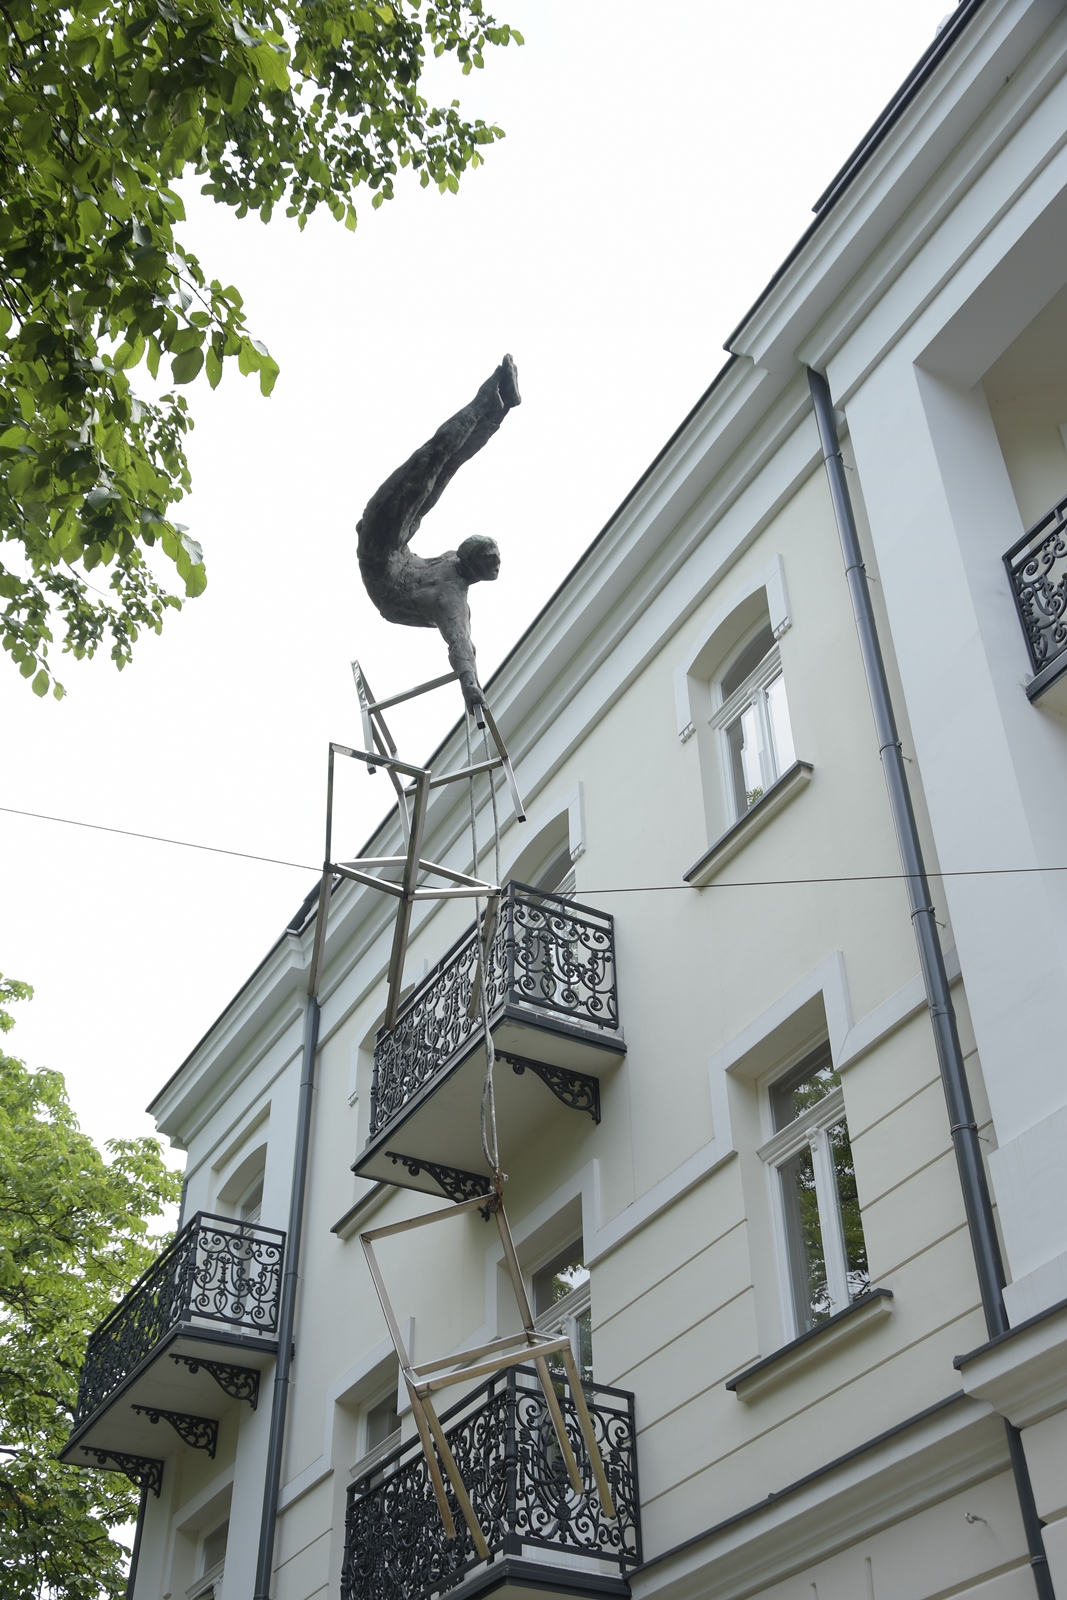 Instalacja artystyczna w Busku Zdroju przedstawiająca akrobatę.